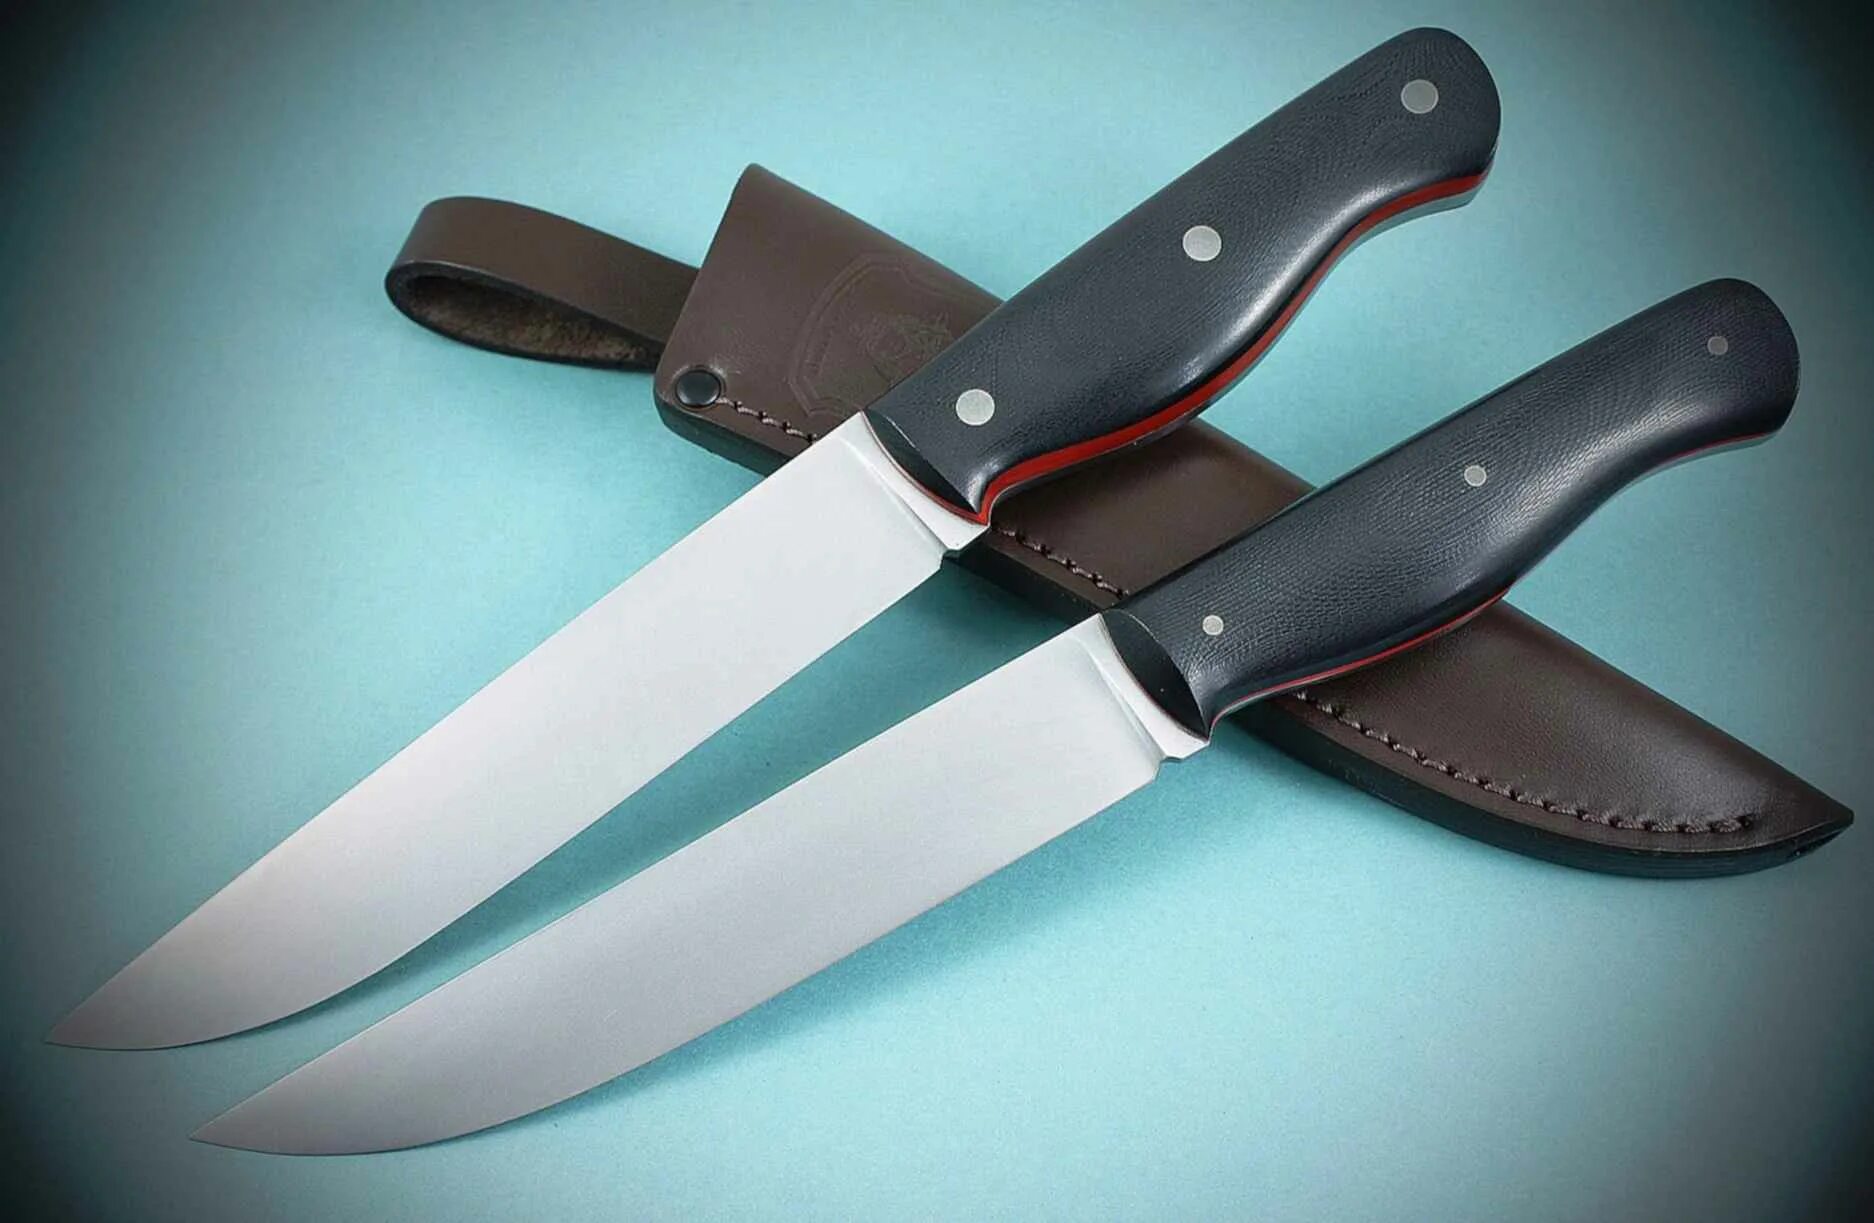 Ножи какой фирмы. Кметь нож клык. Турецкая фирма ножей. Нож «Боярый Кметь». Кметь нож универсальный.